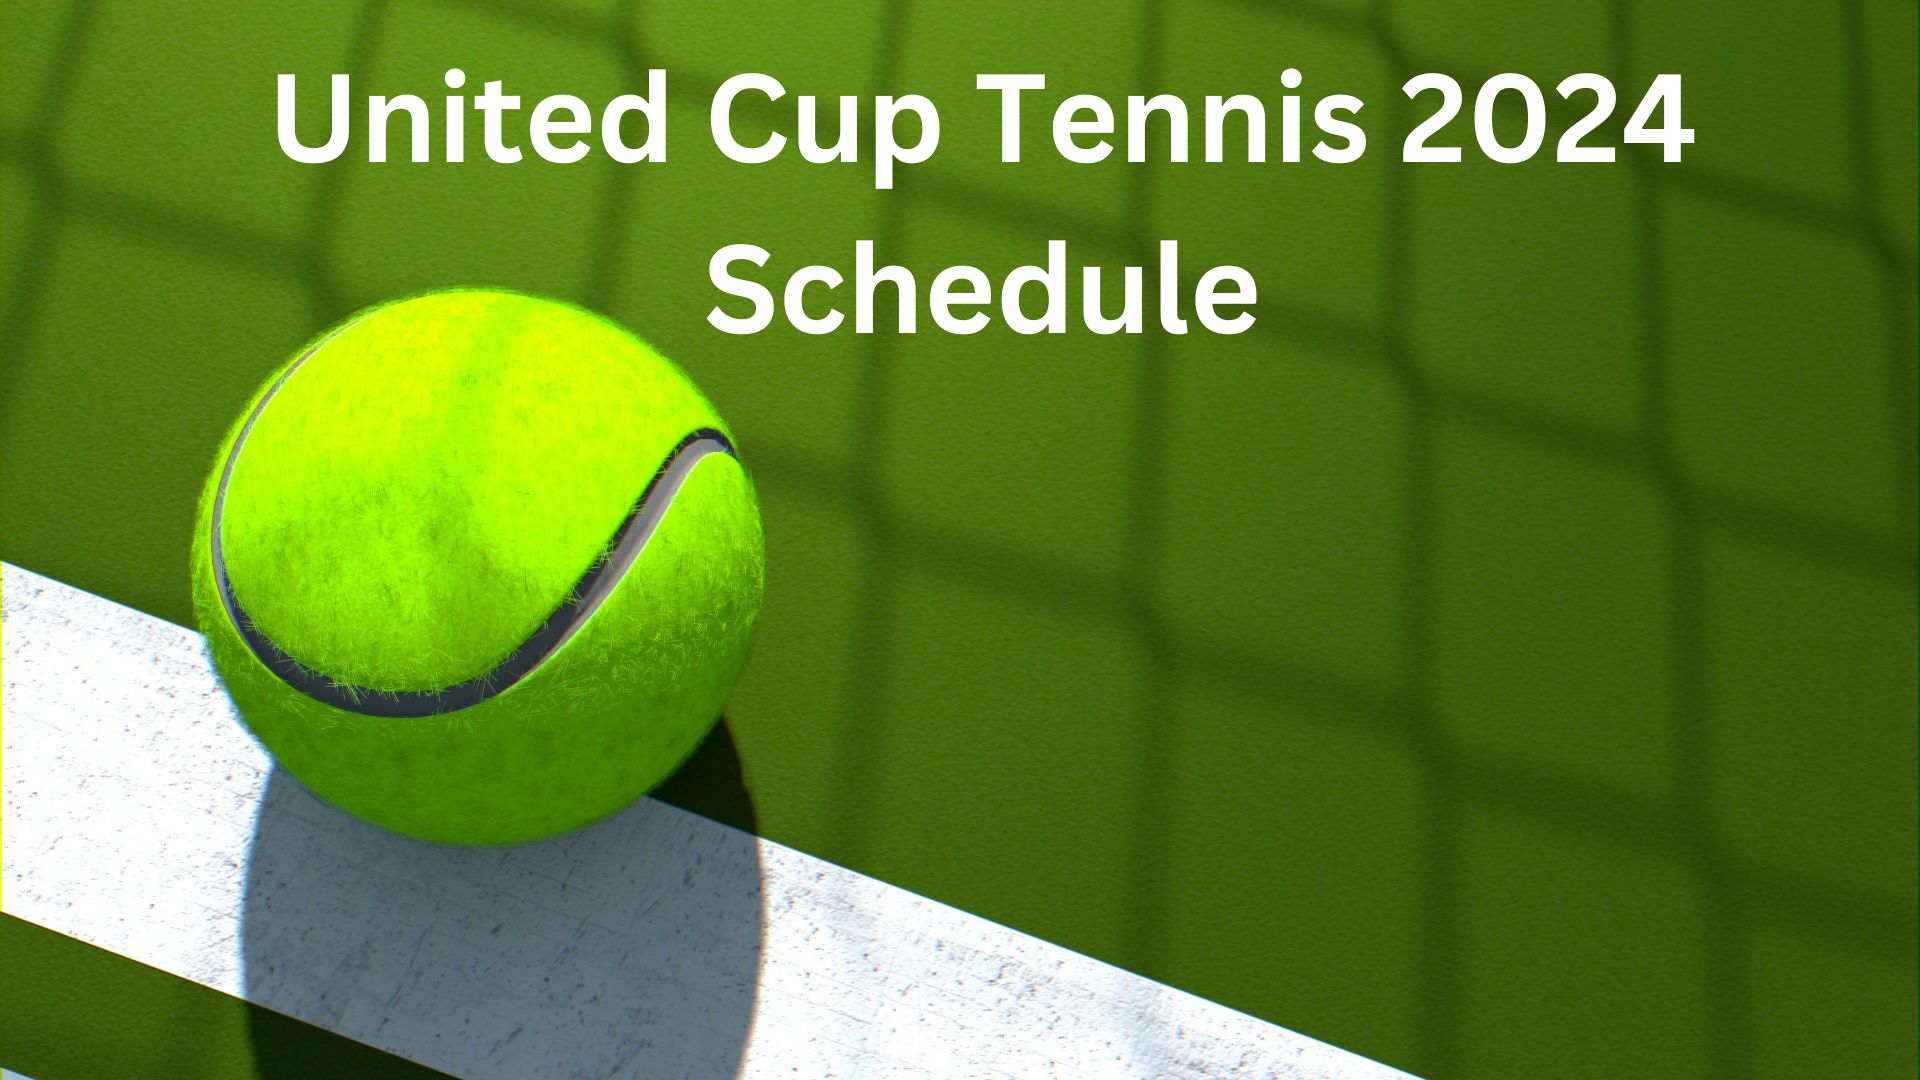 Schedule of United Cup 2024 Tennis Thrills Down Under Sports Flashy